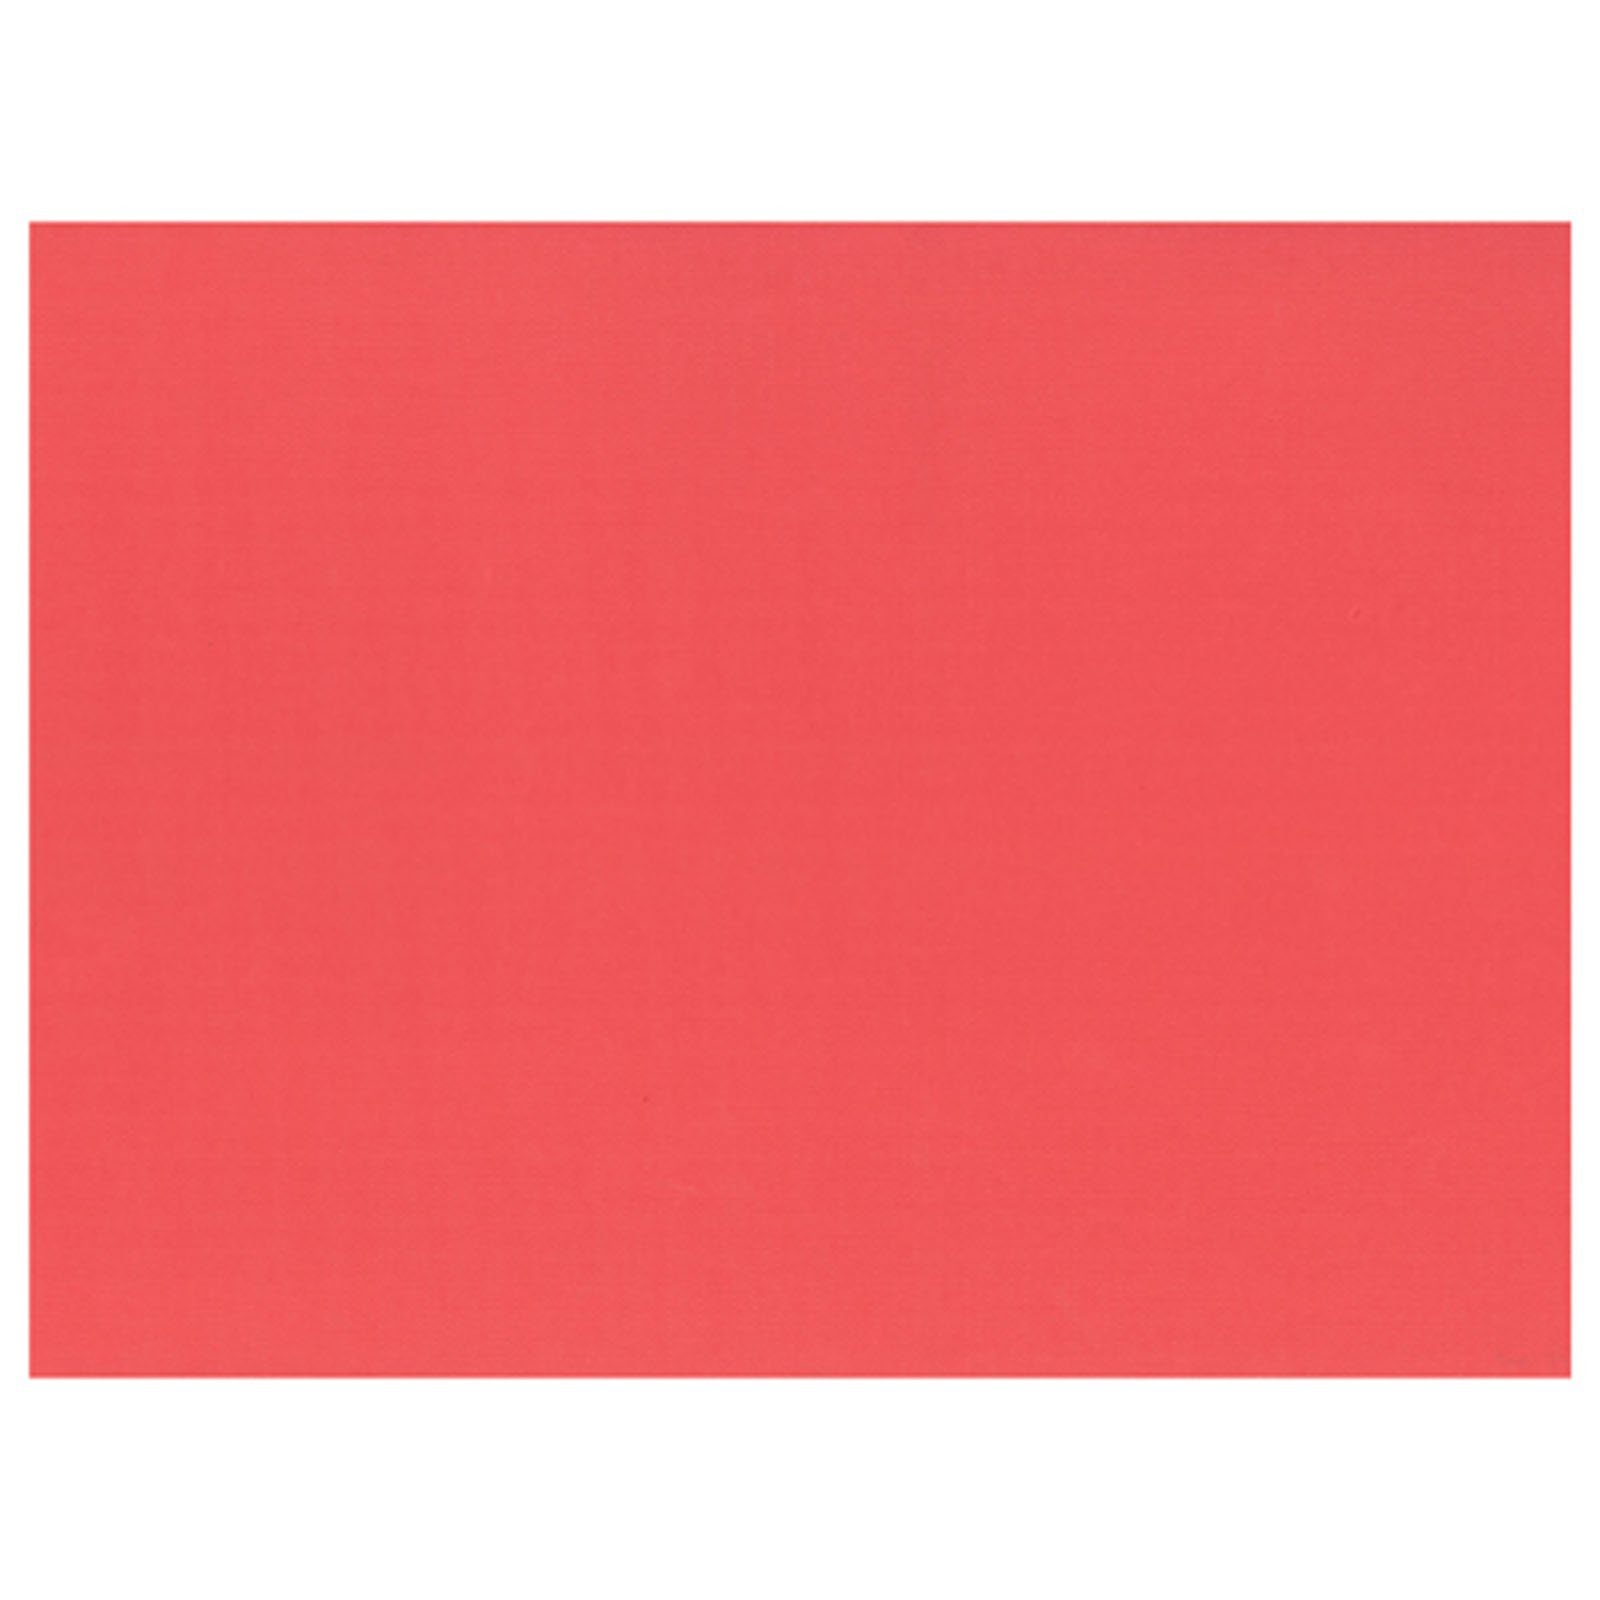 PAPSTAR Einwegschale 1000 Stück Papier Tischsets, rot 30 x 40 cm